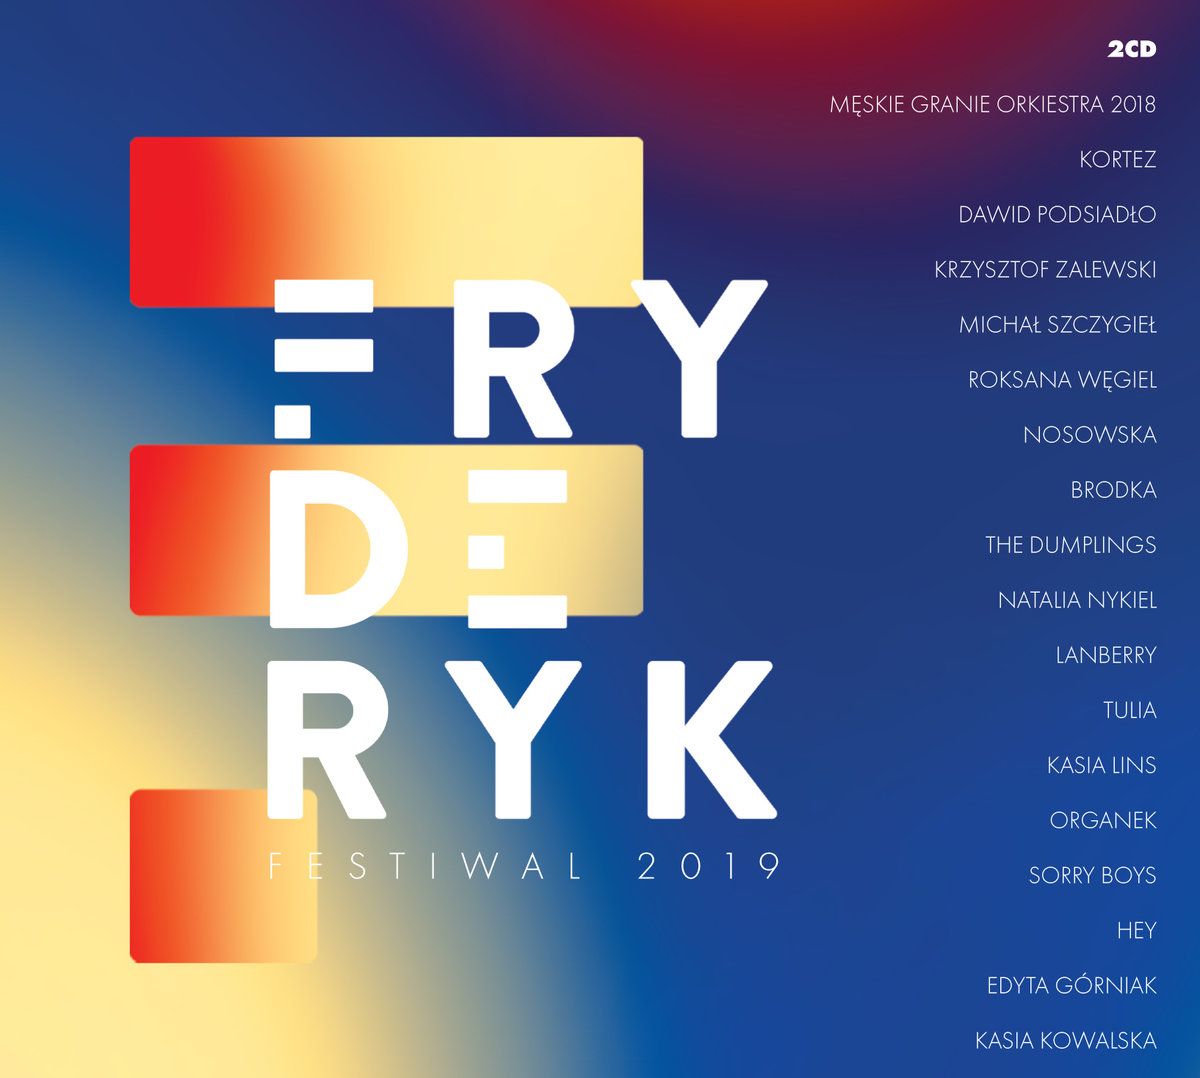 Fryderyk Festival 2019